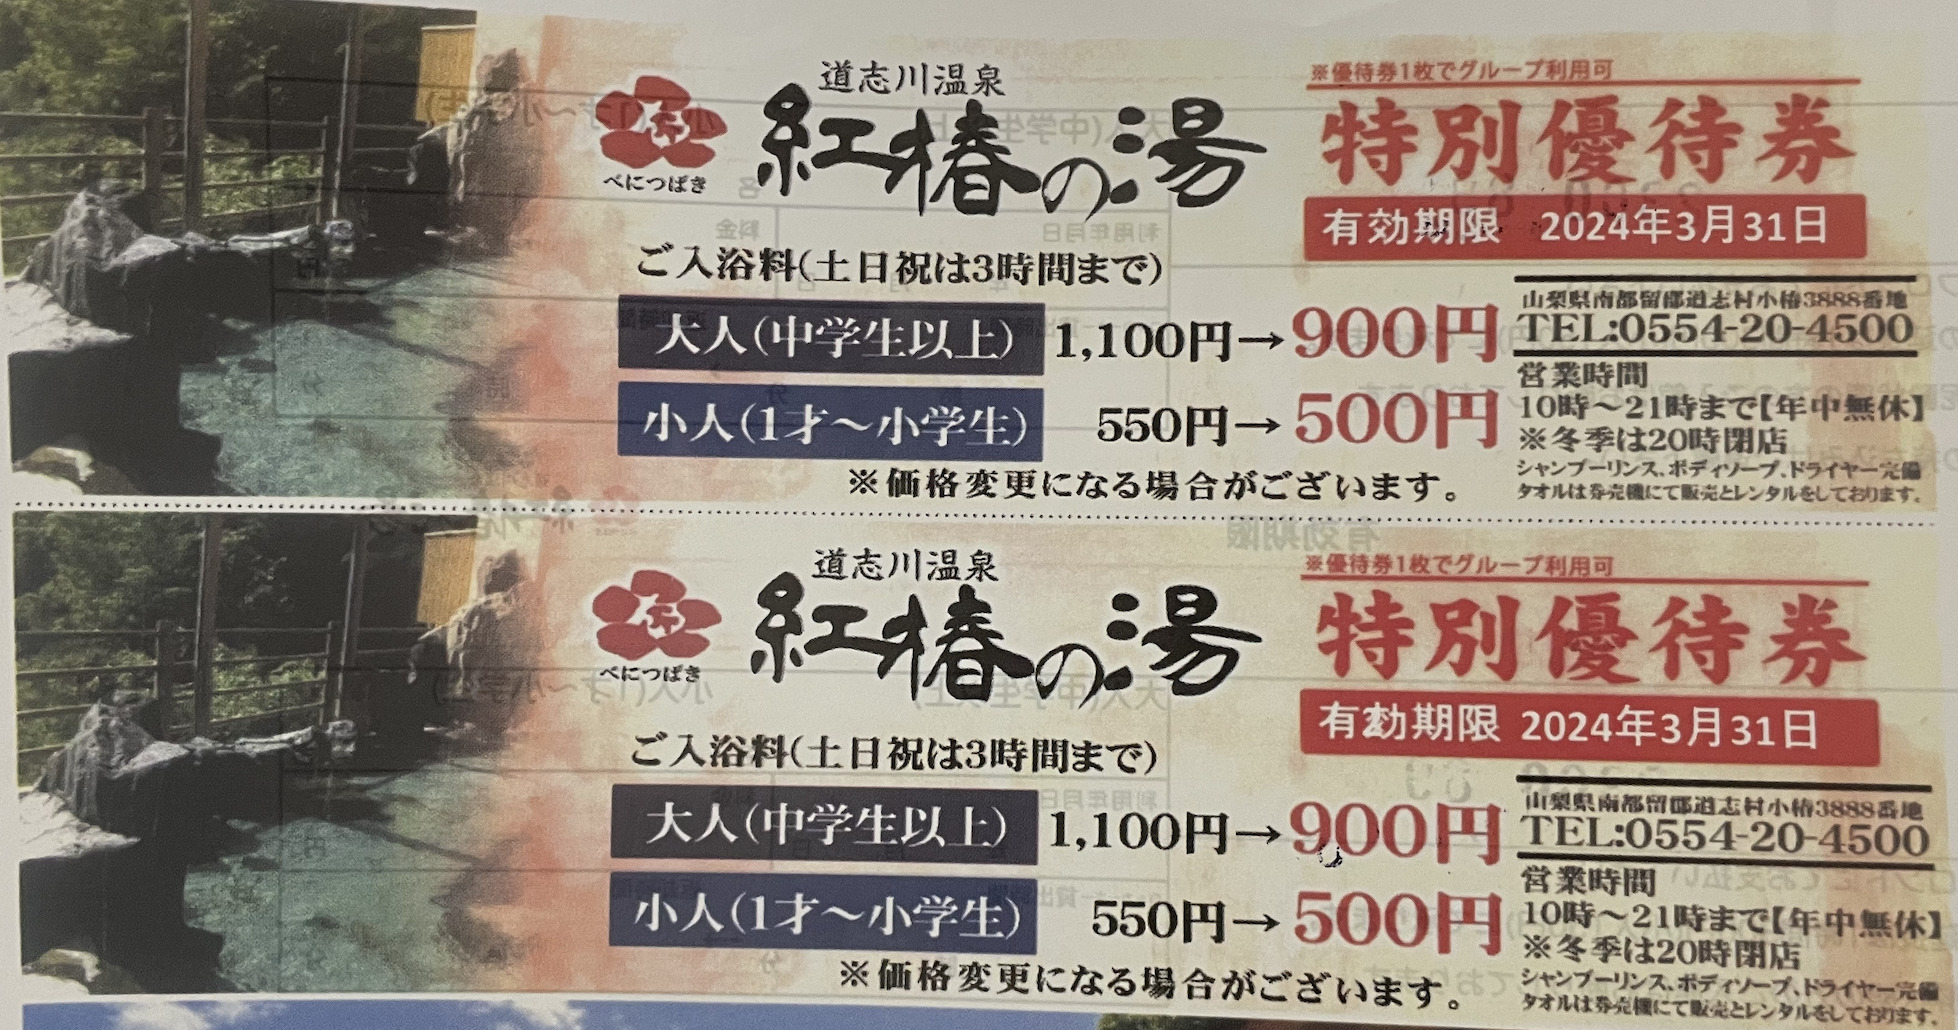 ウッズマンキャンプ場で道志川温泉　紅椿の湯の割引券をもらいました